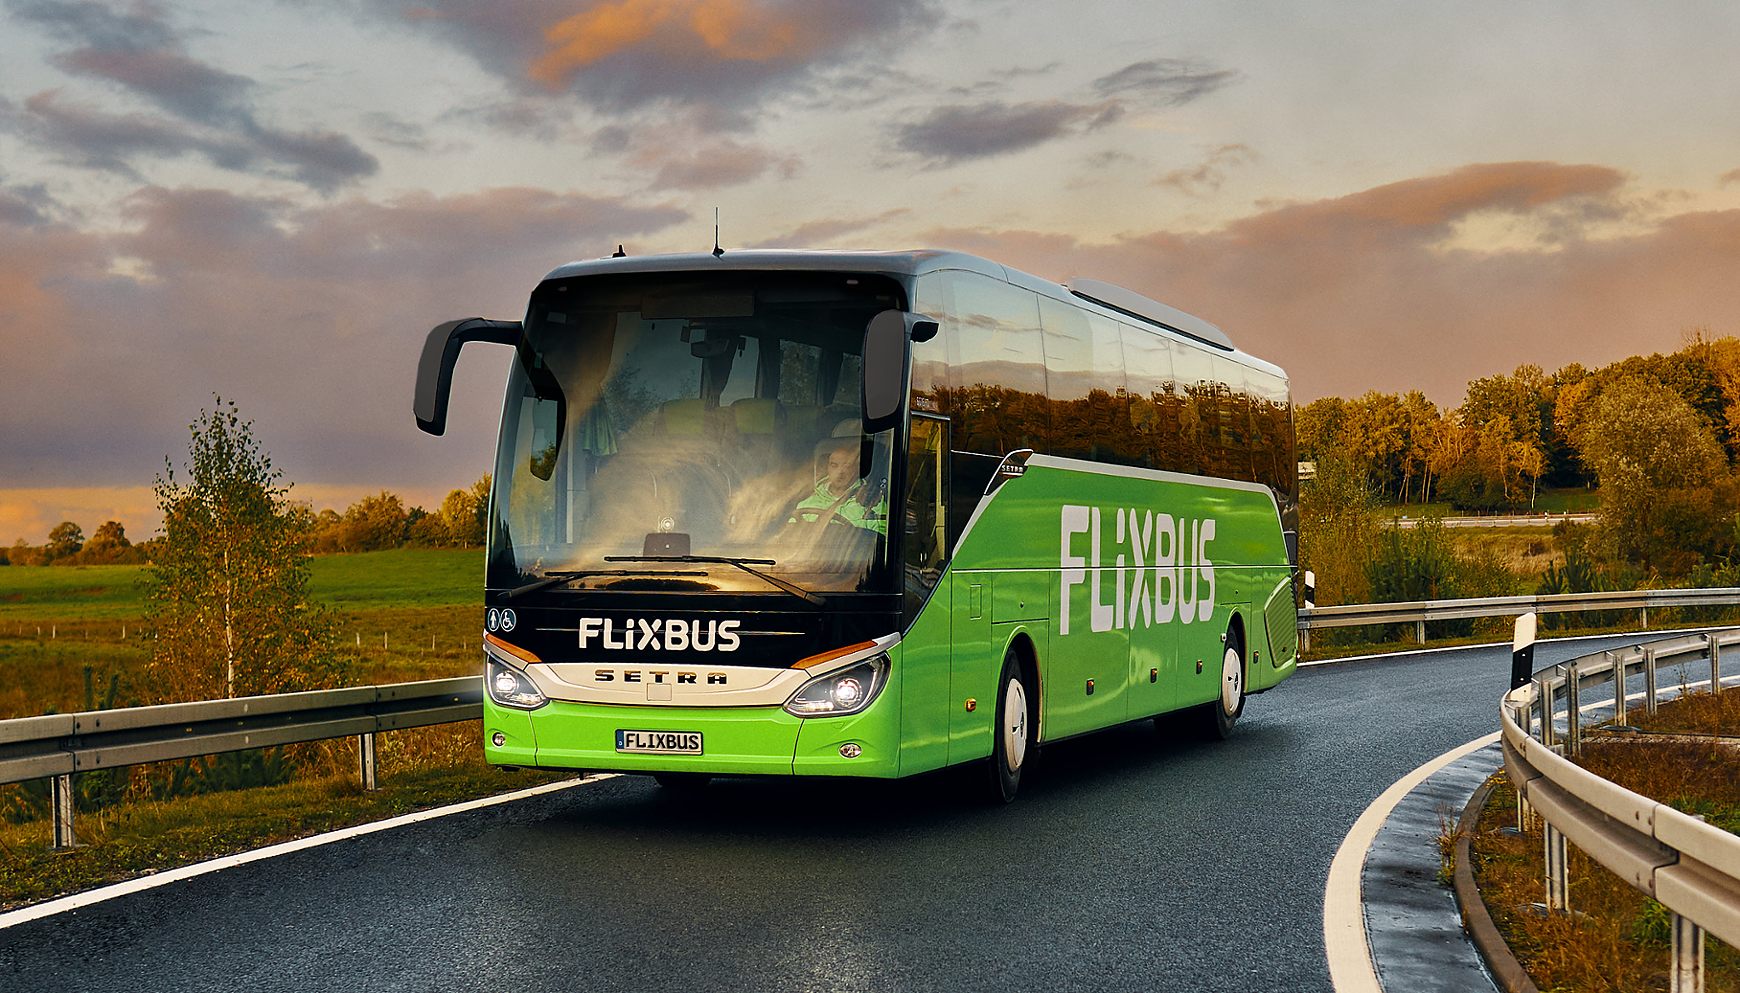 FlixBus on the road